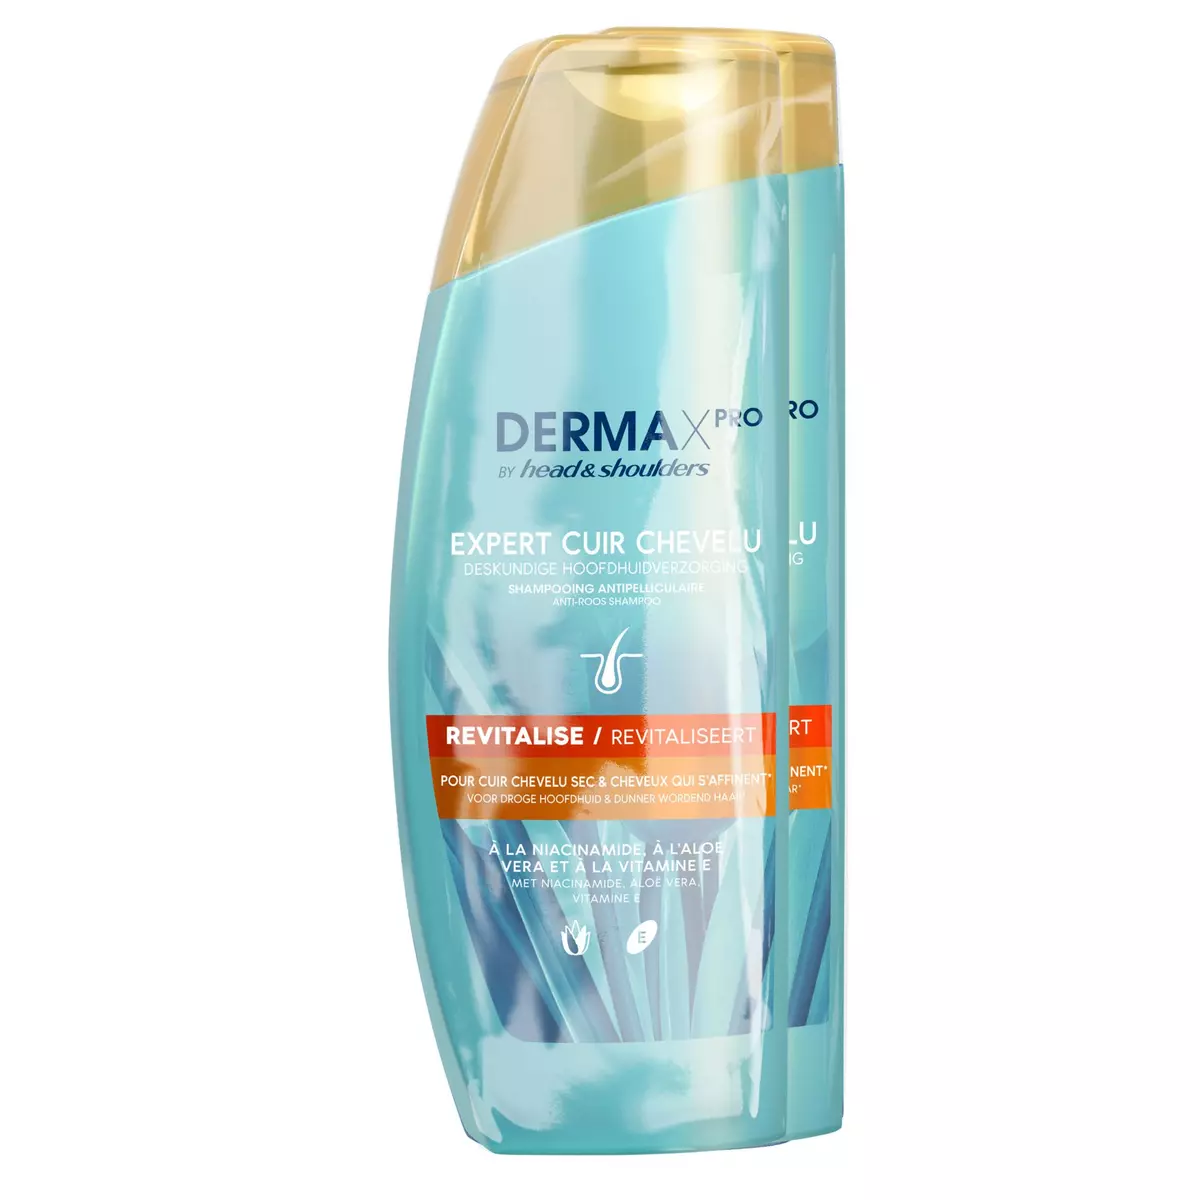 HEAD & SHOULDERS Derma X pro shampooing mixte revitalise pour cheveux secs 2x225ml